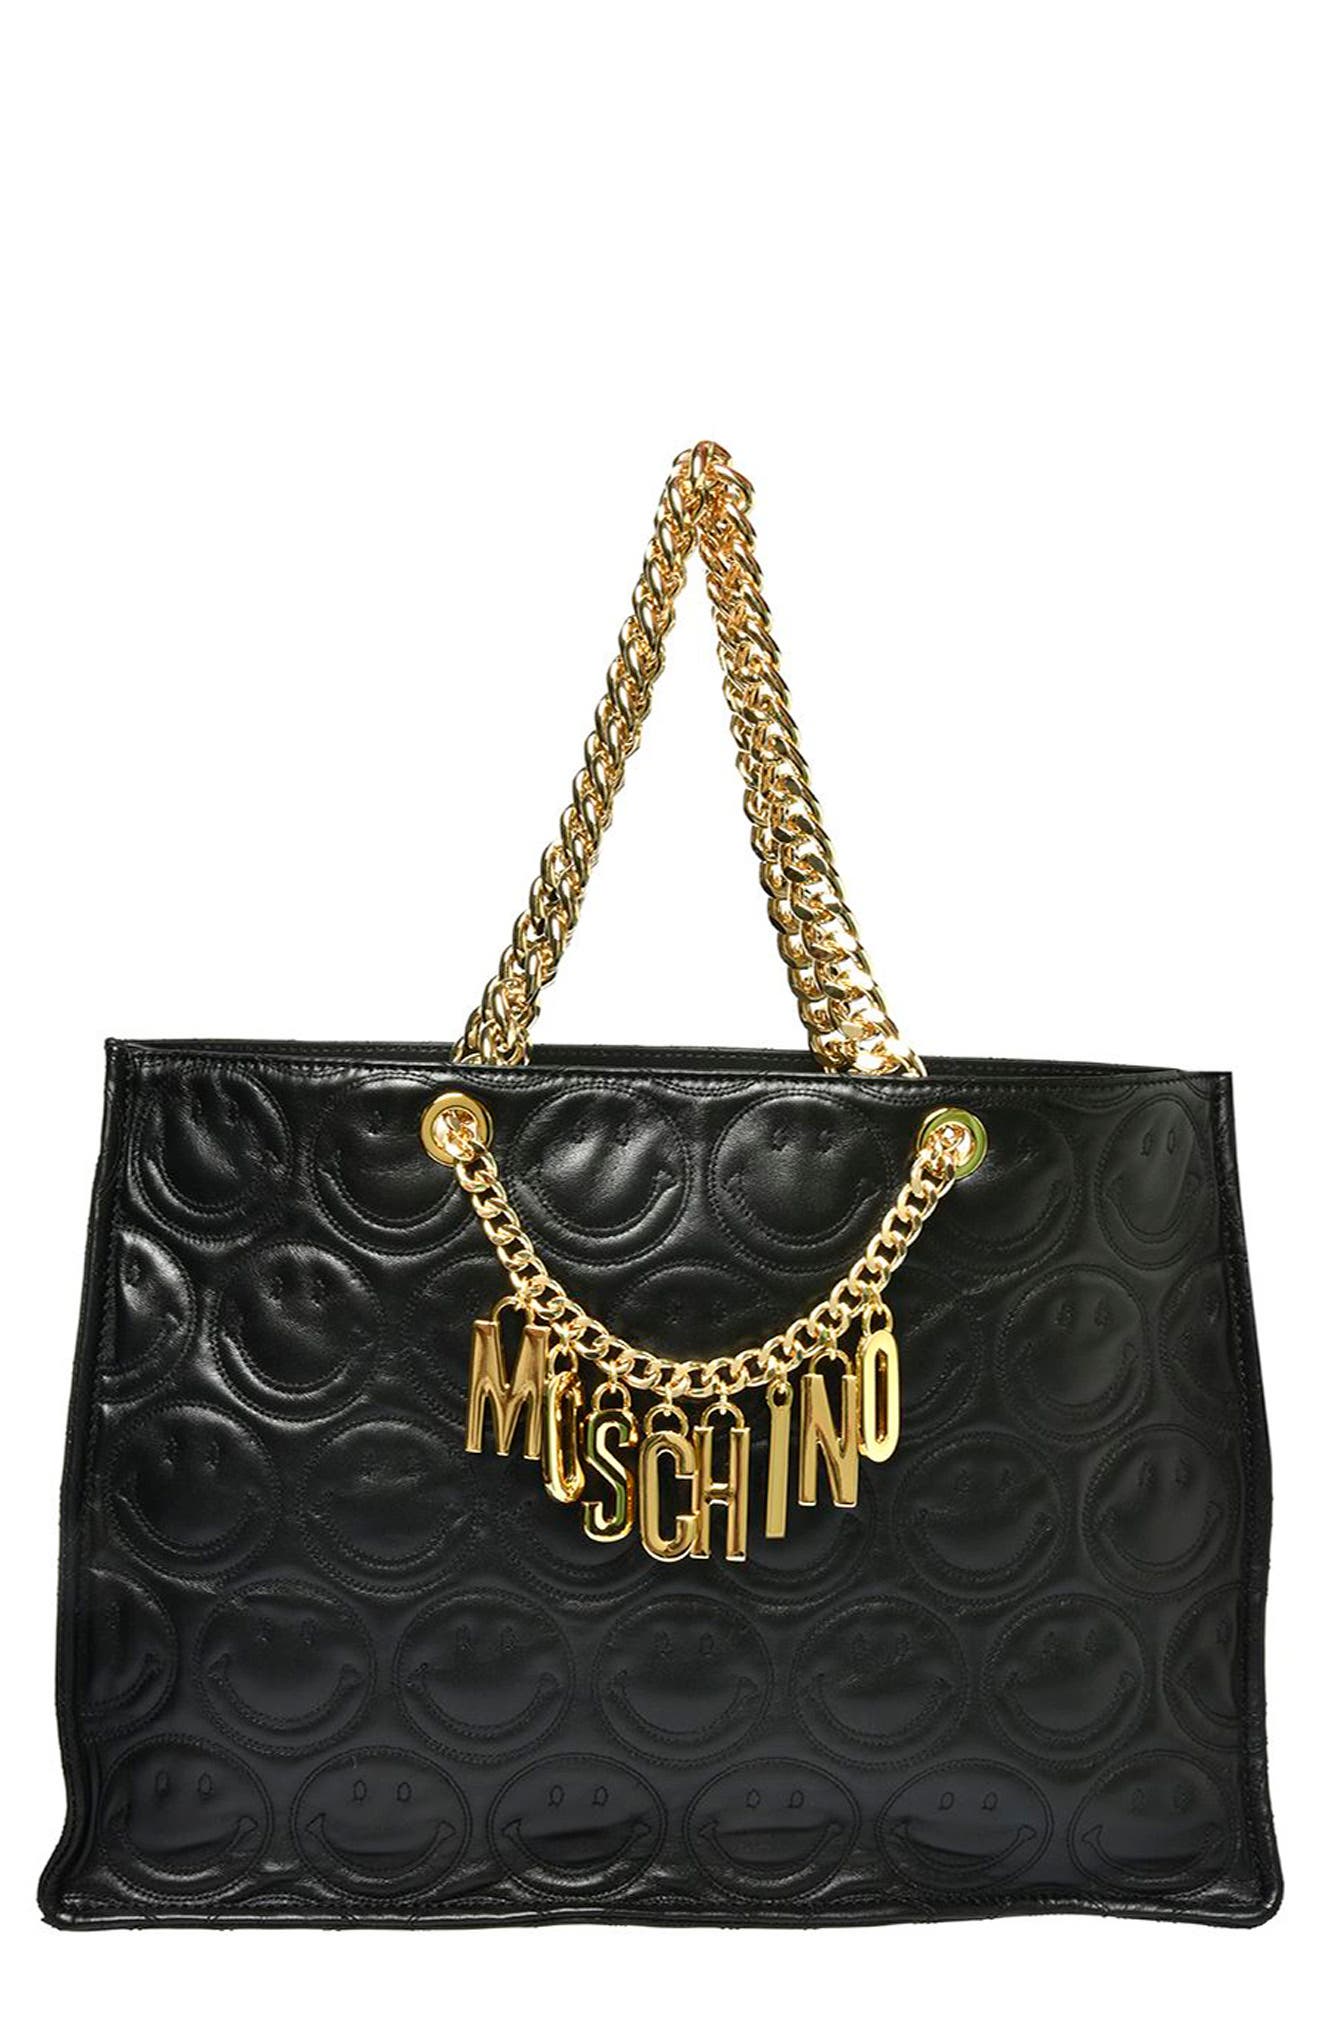 moschino women's handbags